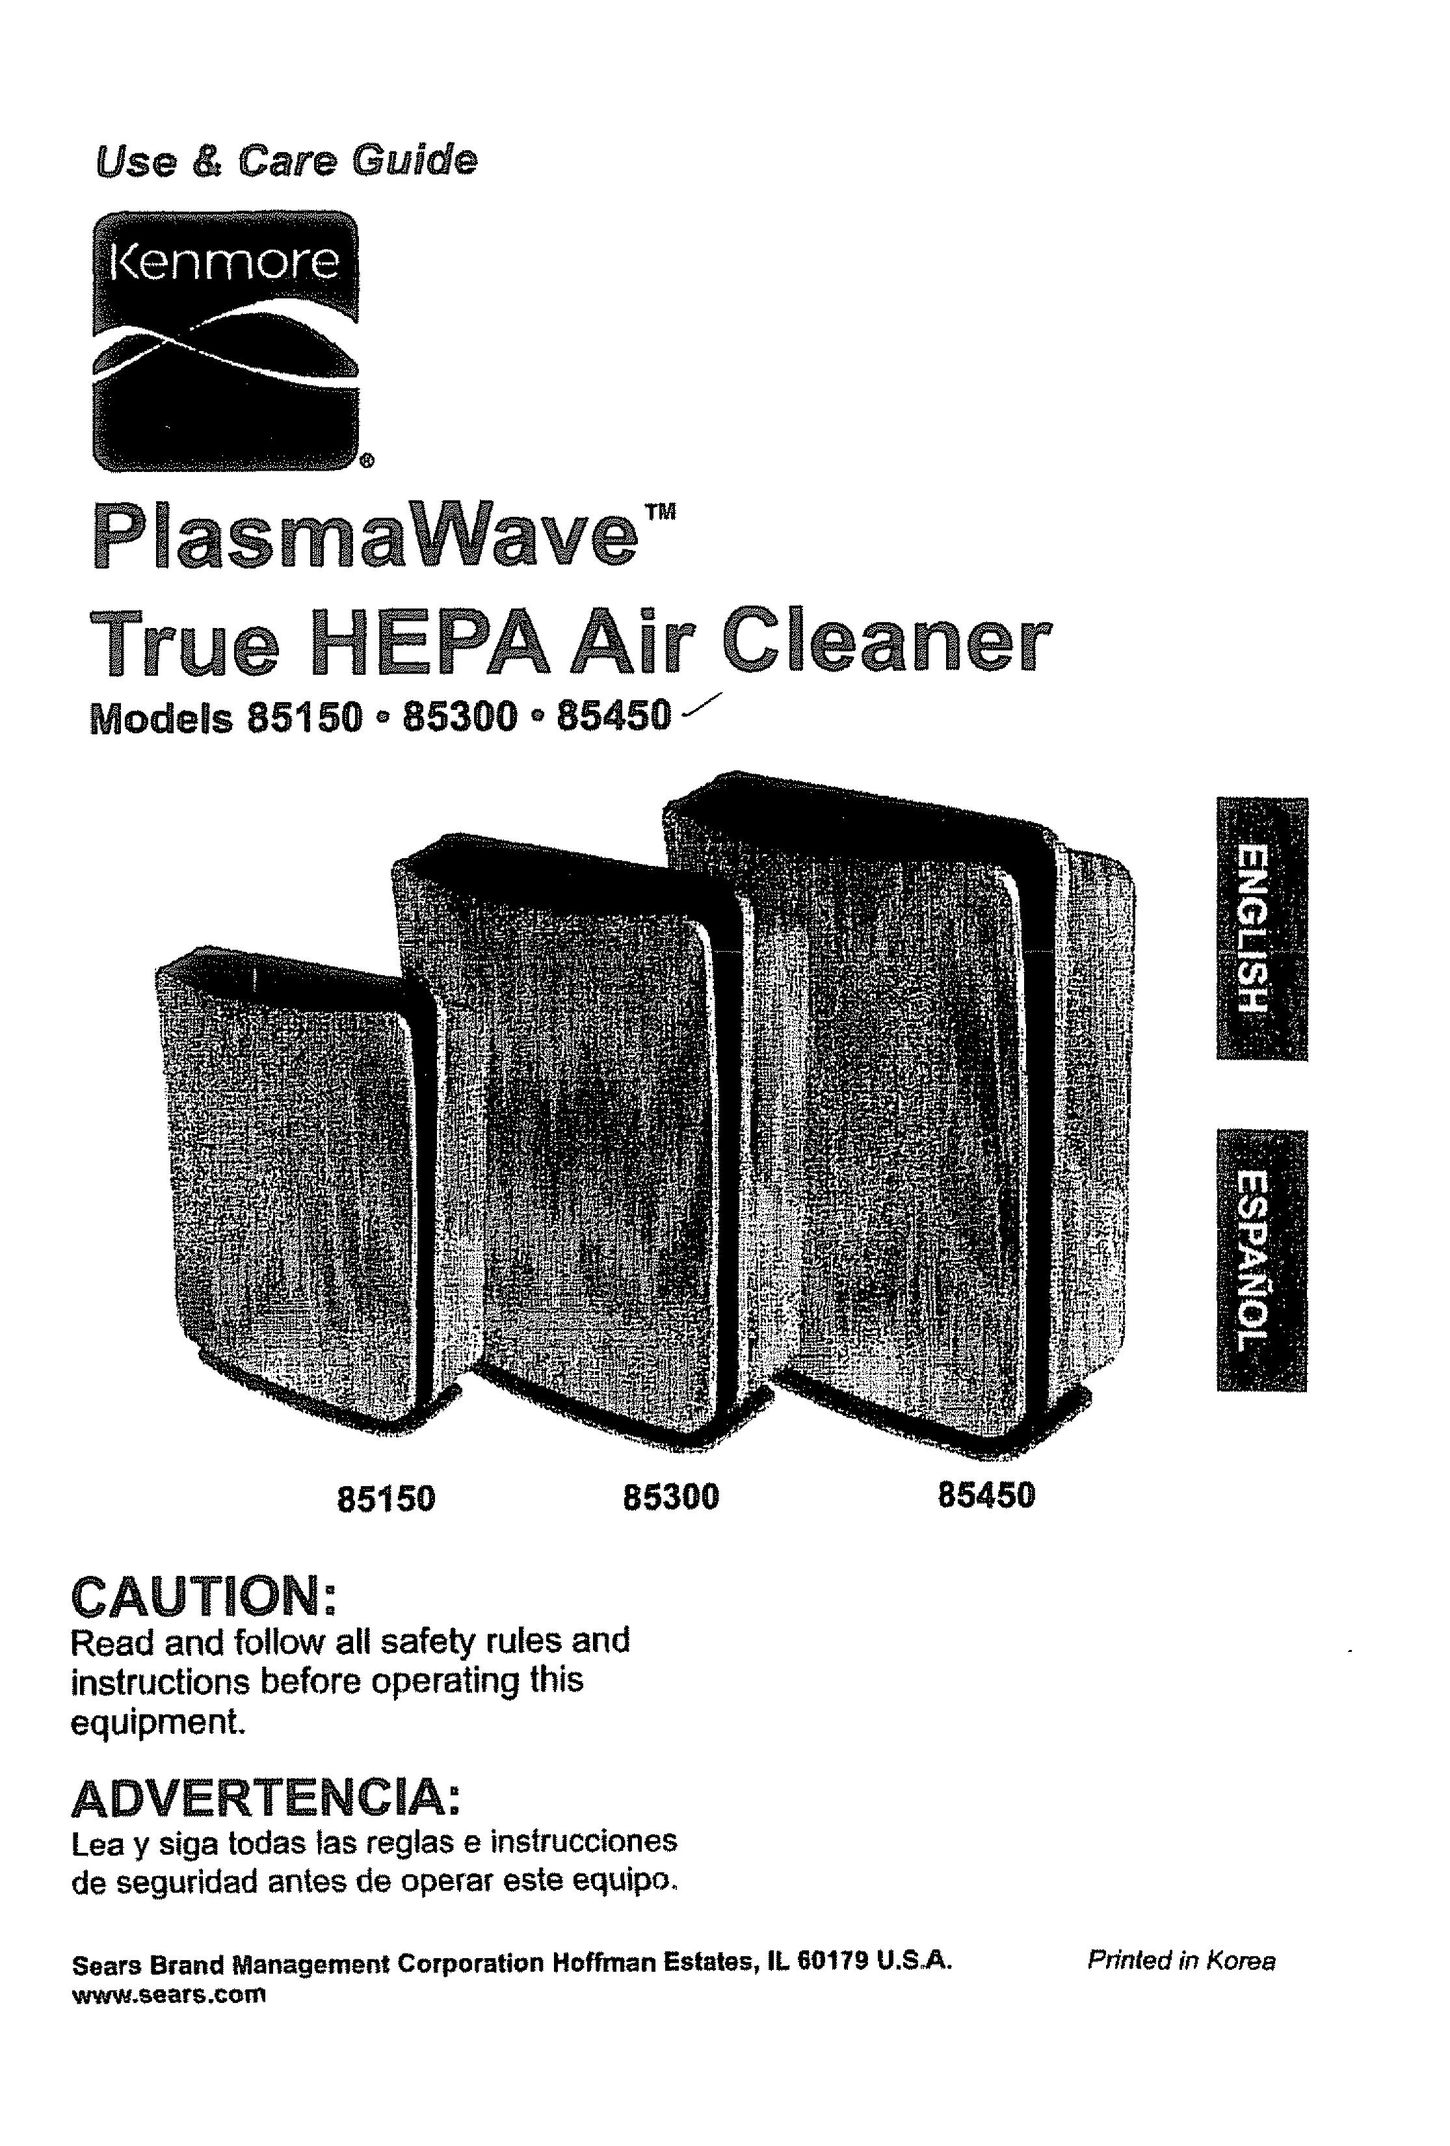 Kenmore 85450 Air Cleaner User Manual